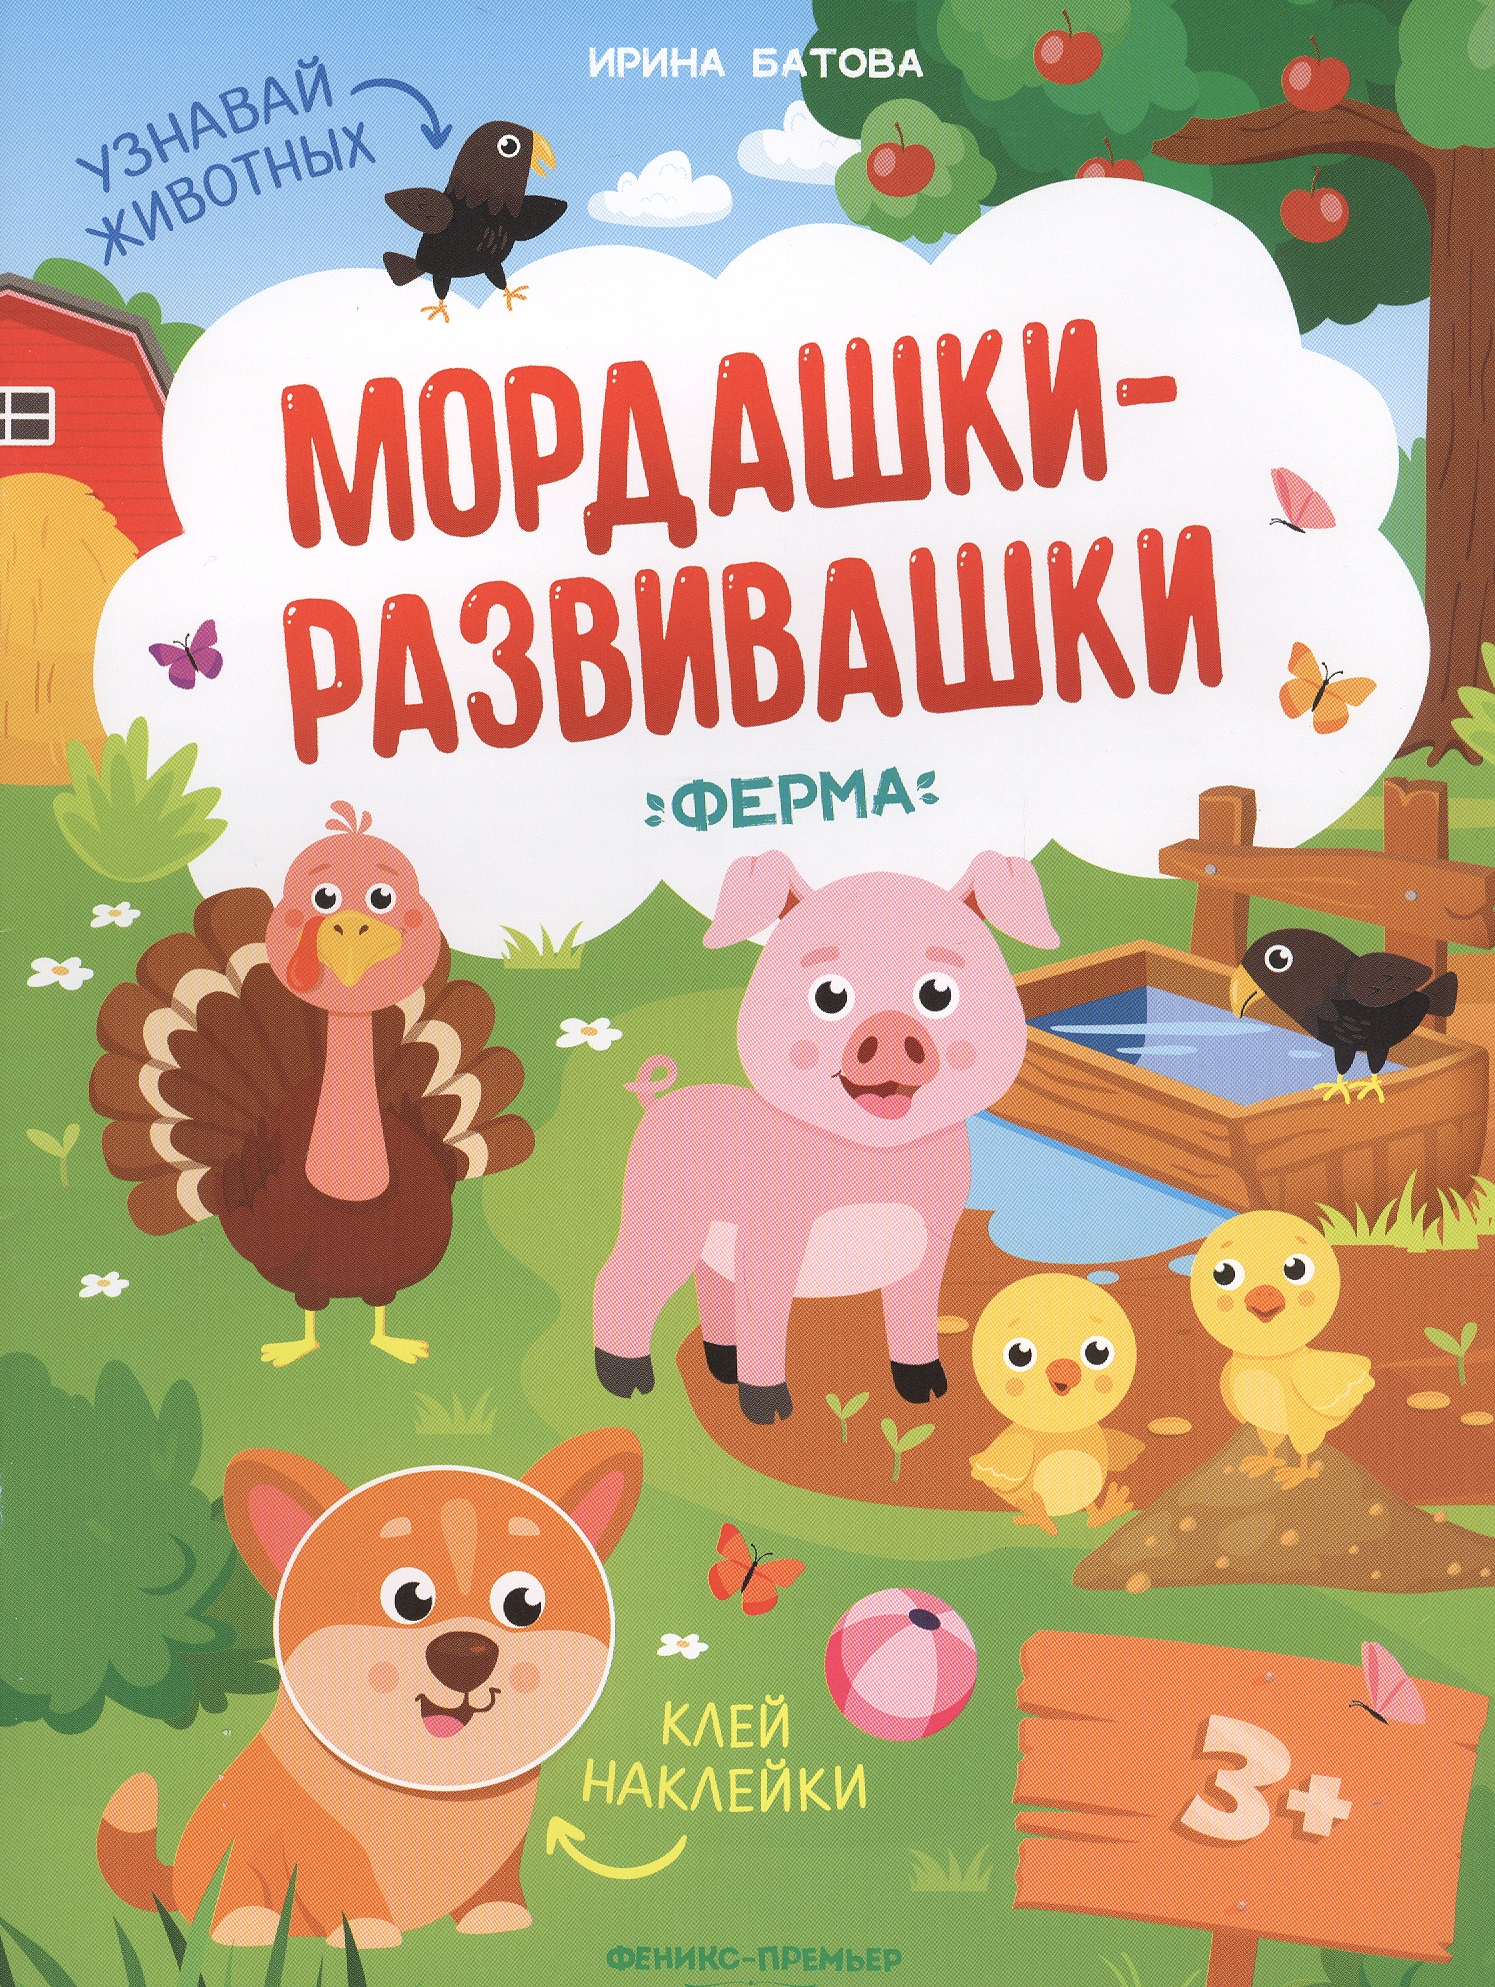 Ферма: книжка с наклейками книга мордашки развивашки животные с наклейками